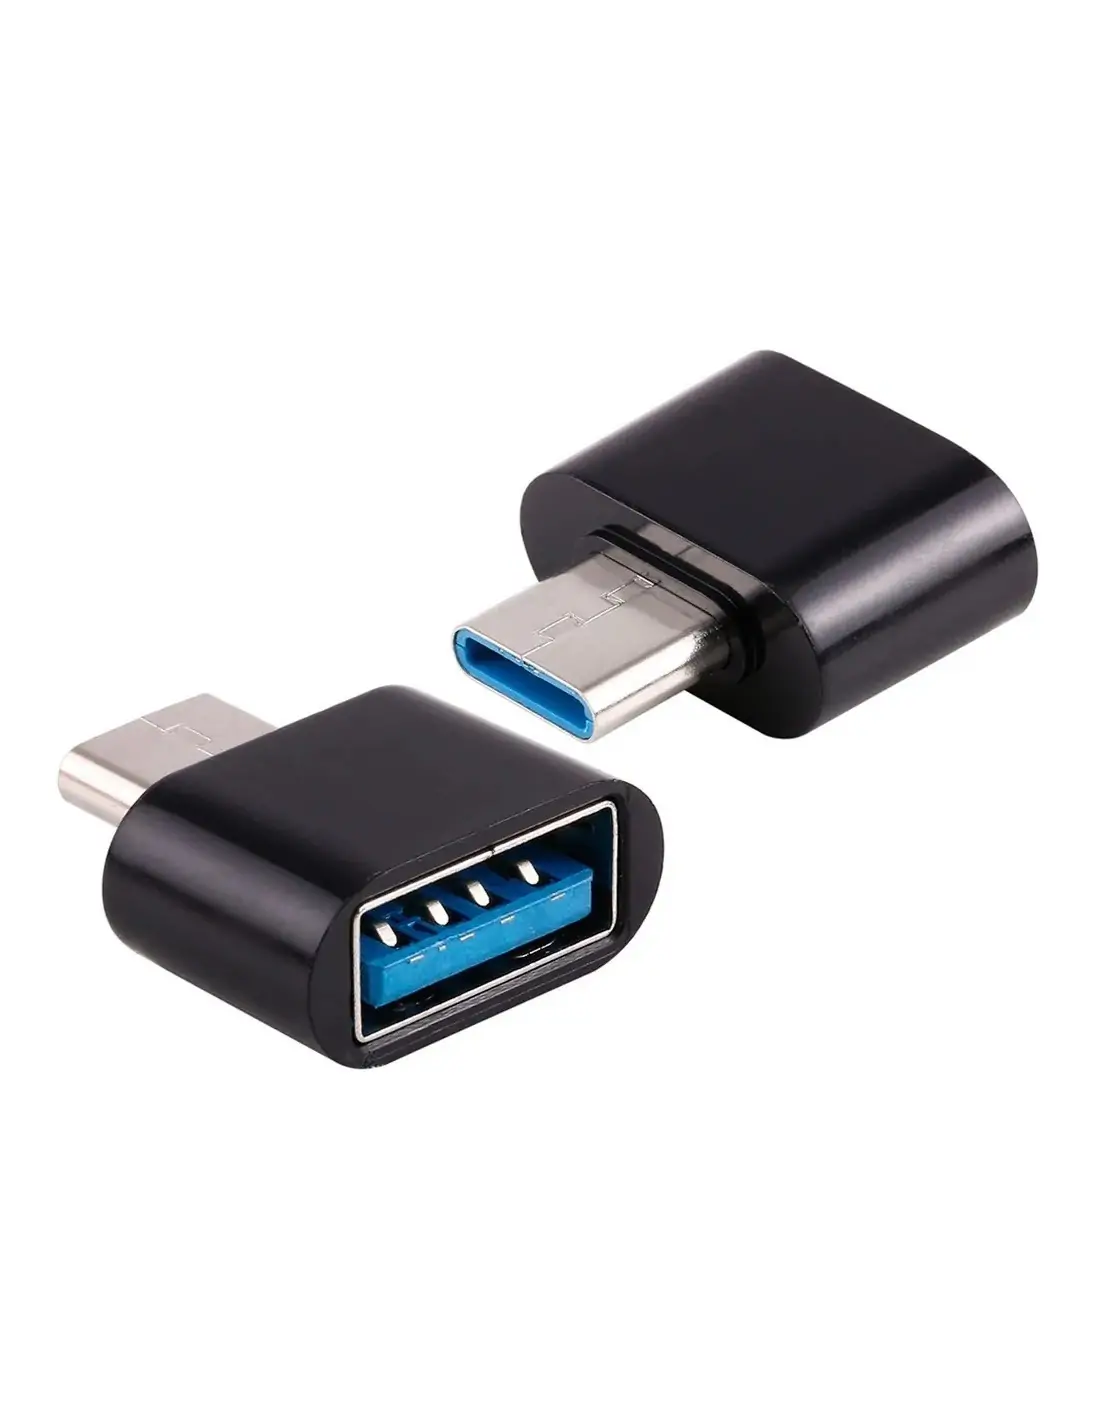 Adaptador OTG Tipo C a USB-A 3.0